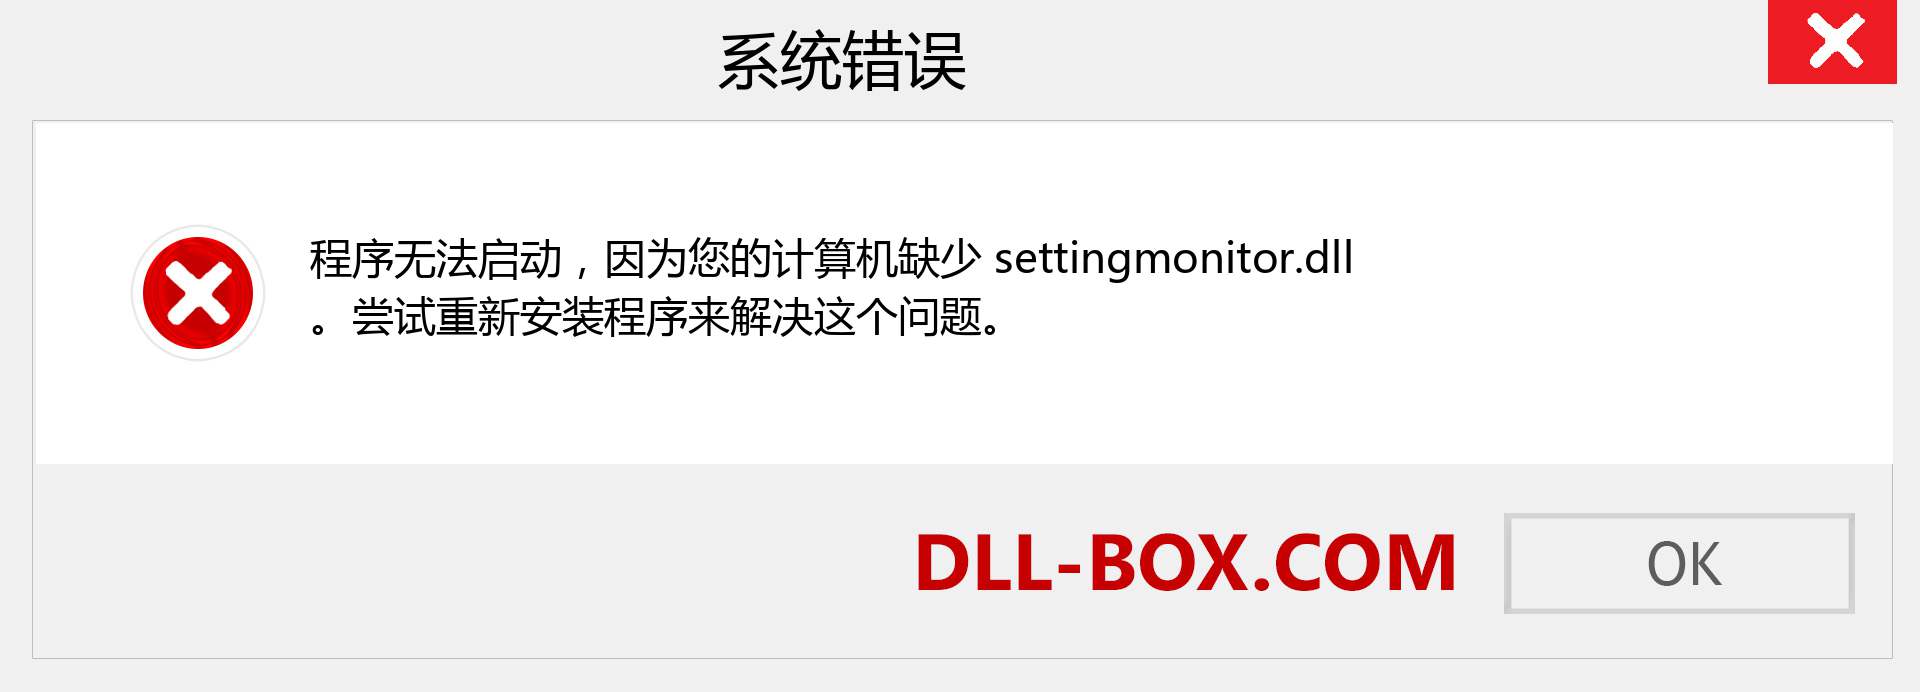 settingmonitor.dll 文件丢失？。 适用于 Windows 7、8、10 的下载 - 修复 Windows、照片、图像上的 settingmonitor dll 丢失错误